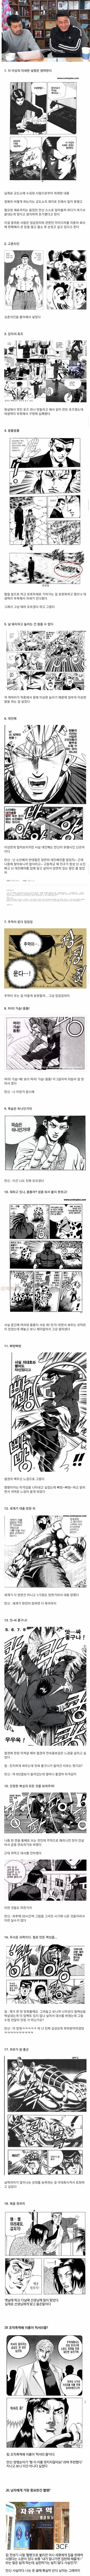 먹튀검증소 유머 이말년 방송 김성모 인터뷰 요약